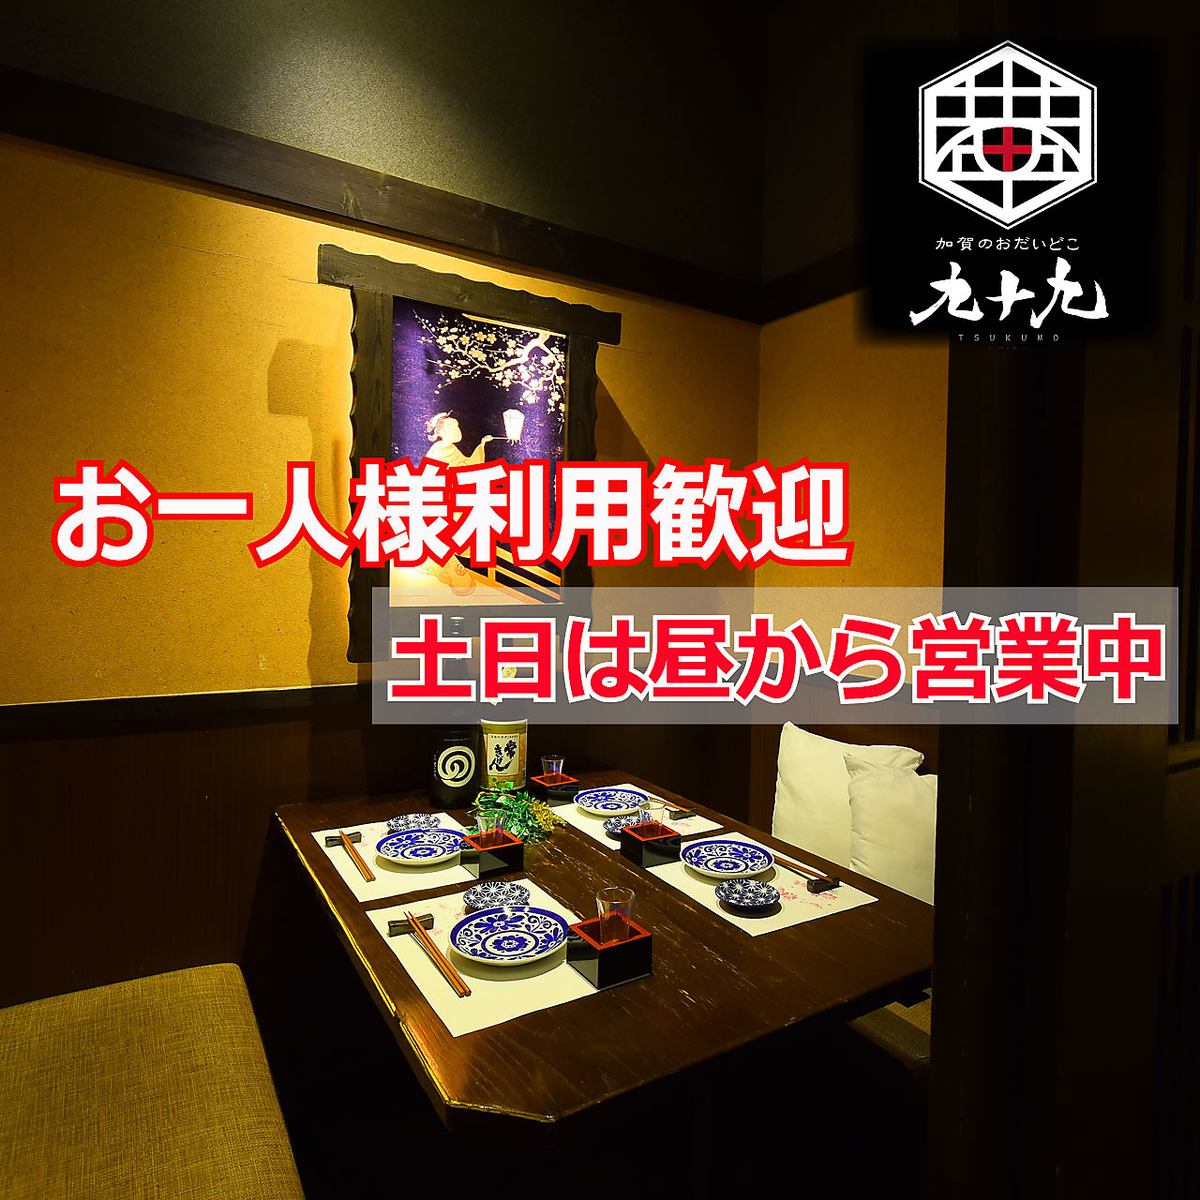 從金澤站步行約1分鐘的私人房間居酒屋！無限暢飲套餐3000日元〜♪最多160人OK♪